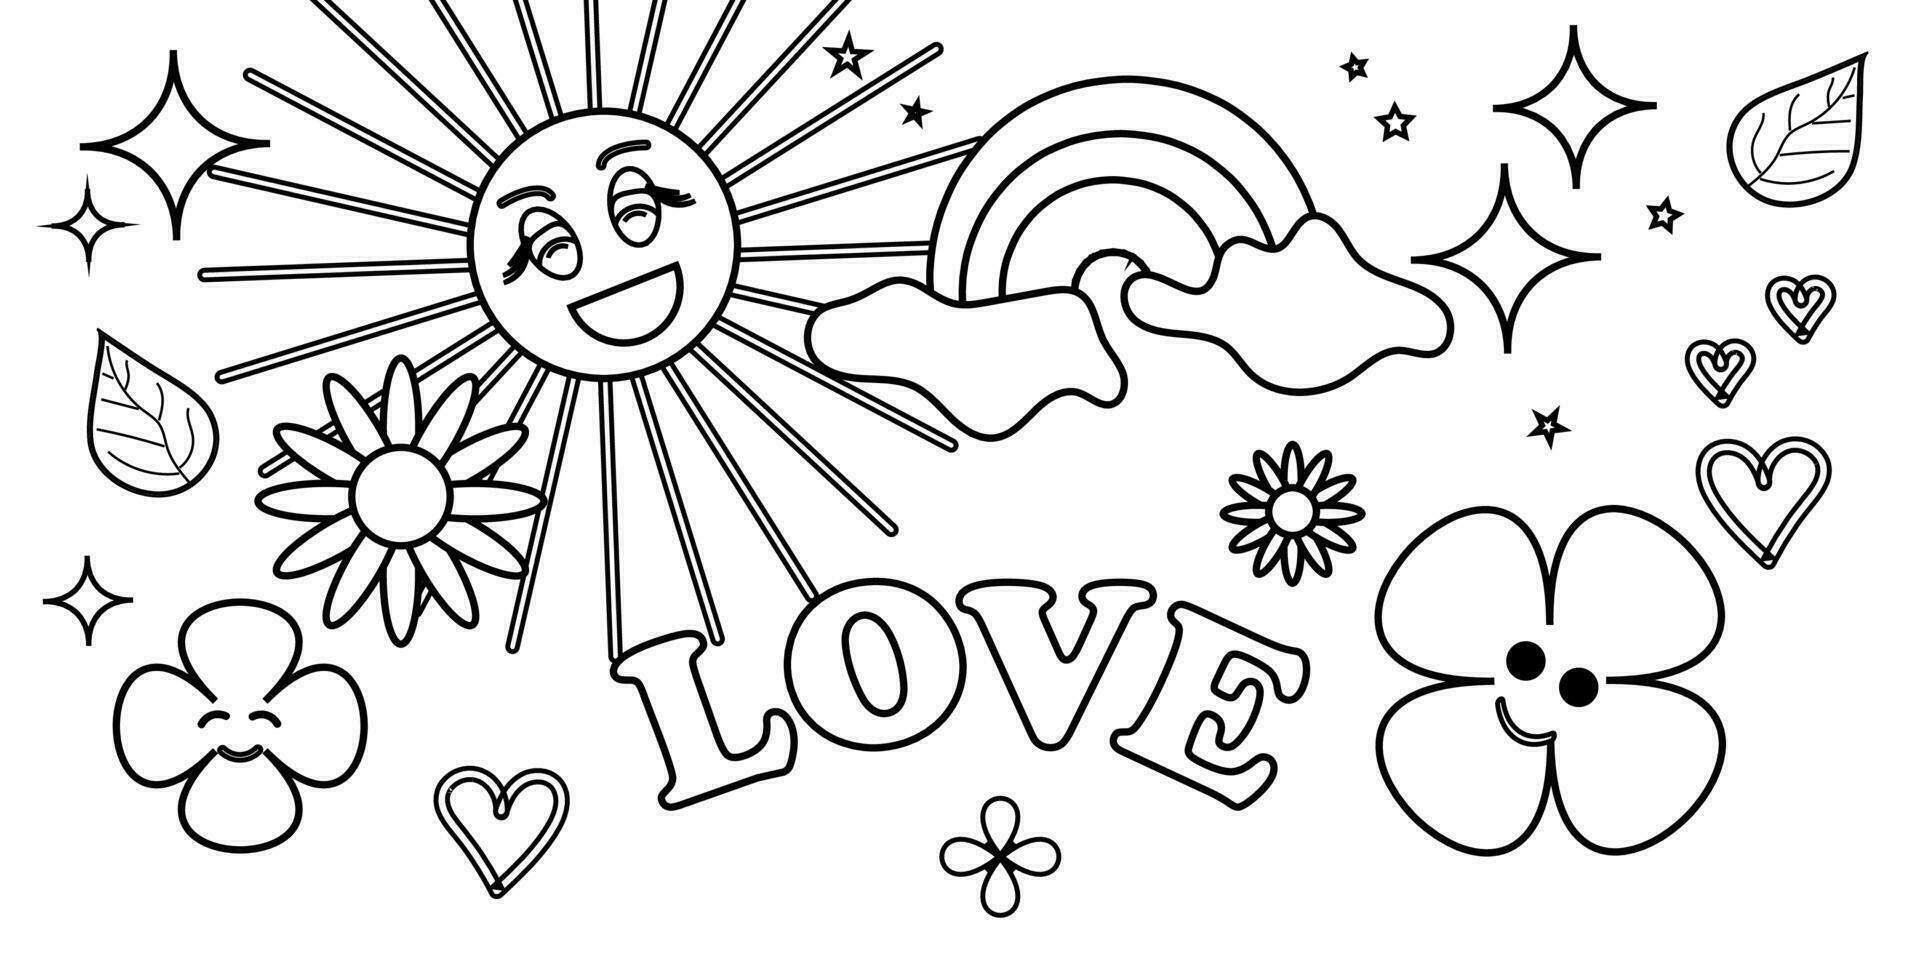 un maravilloso hippie de el años 70 gracioso dibujos animados flor, arcoíris, amar, corazón, manzanilla. pegatina paquete en un de moda retro-psicodélico dibujos animados estilo. ser único vector ilustración.